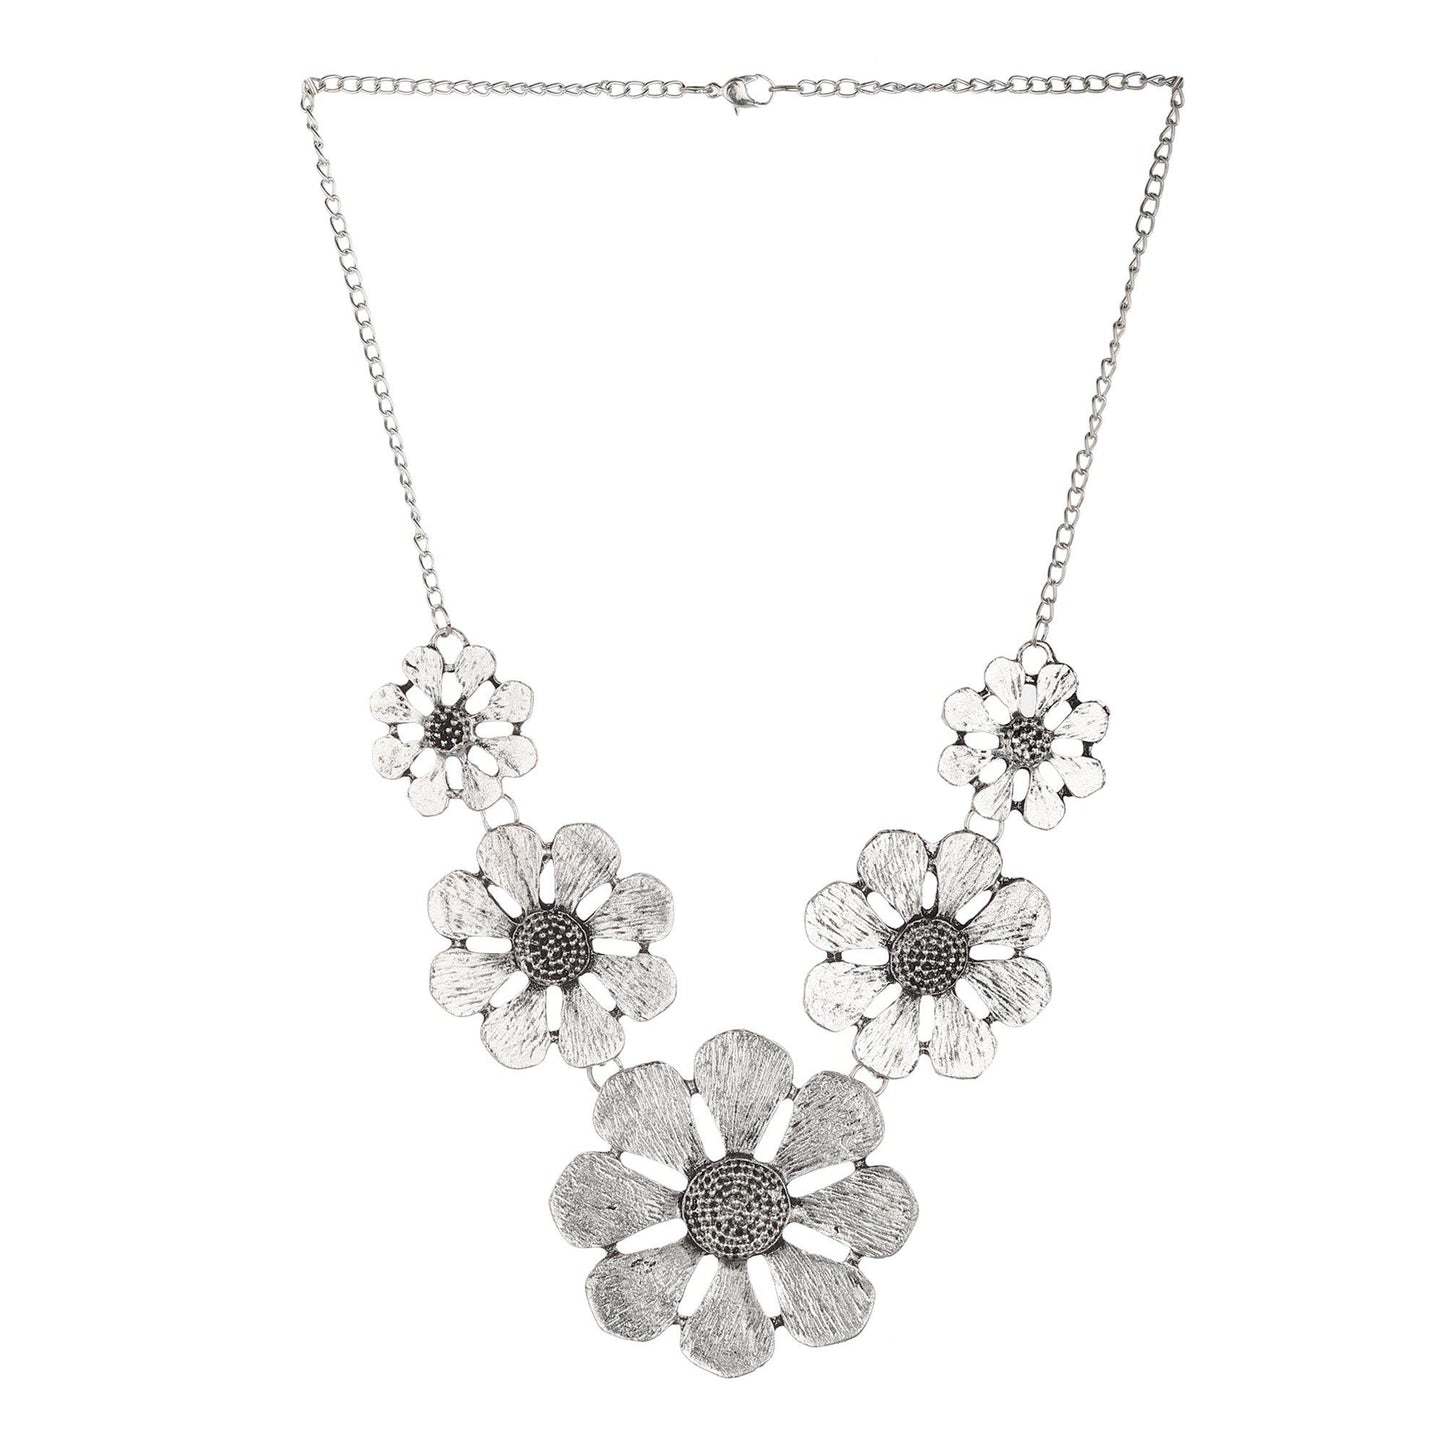 Oxidised Flower Shape Necklace-Necklace Set-ONESKYSHOP